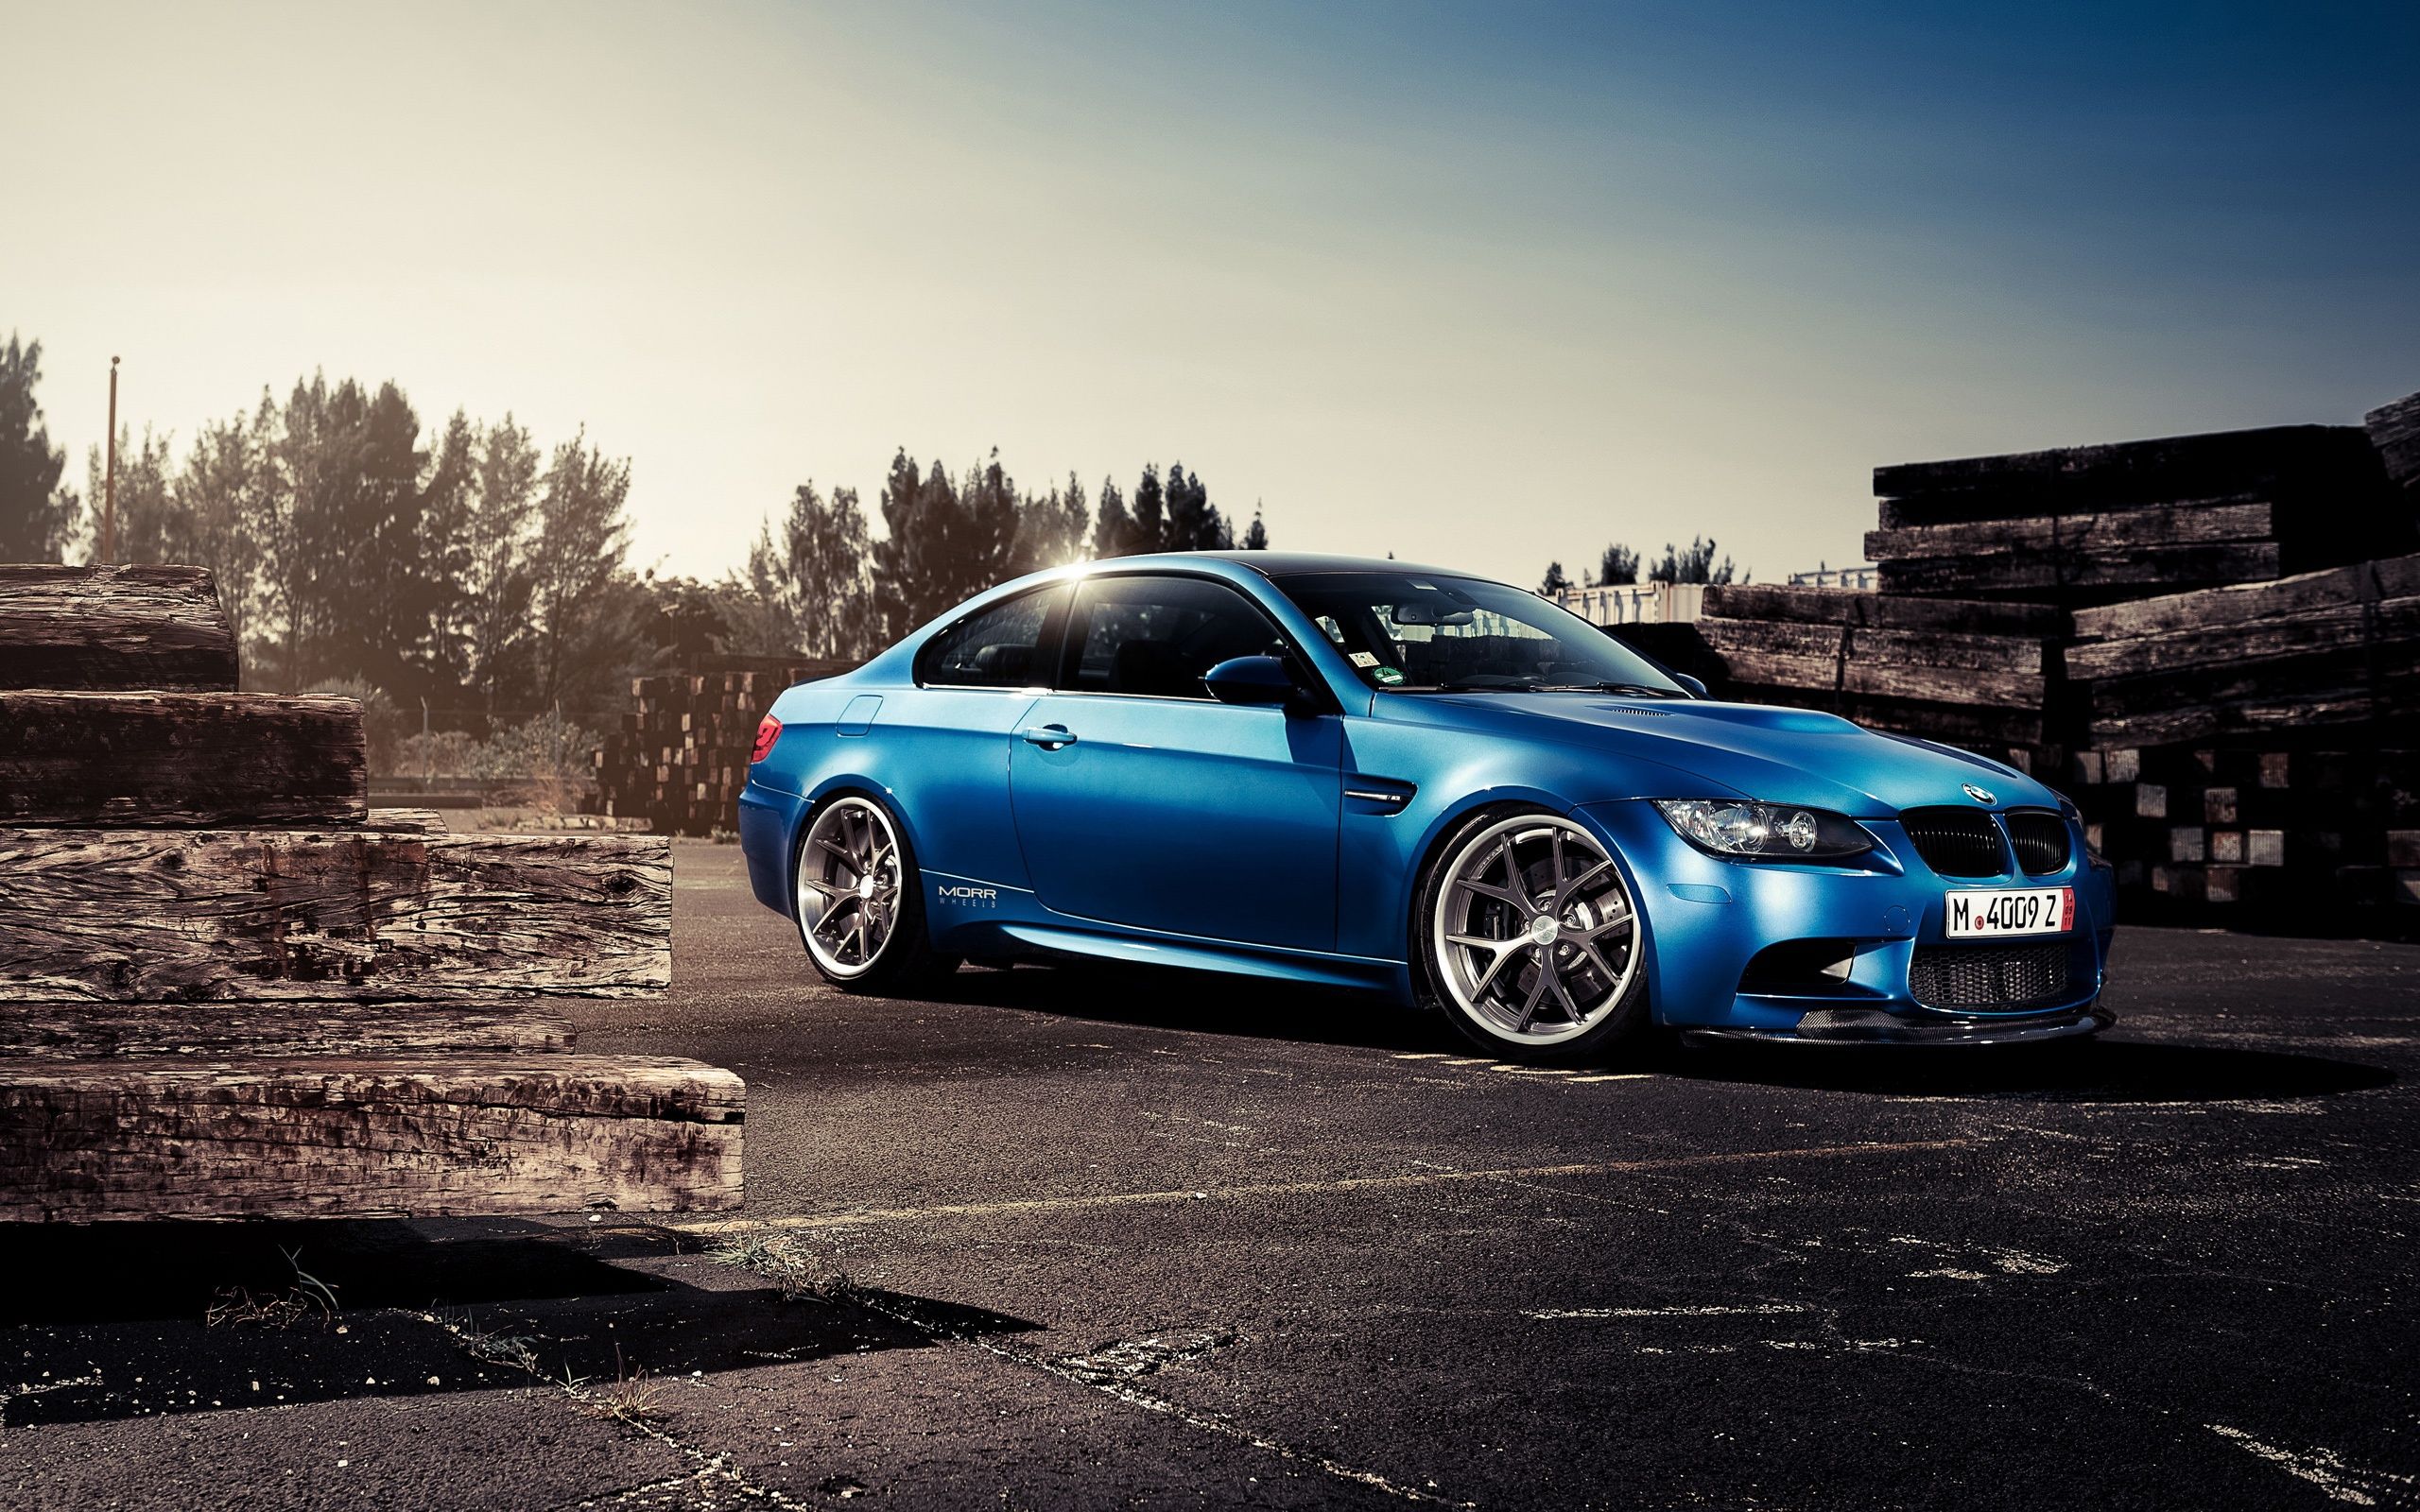  BMW HD Hintergrundbild 2560x1600. BMW M3 blauen Auto Seitenansicht 2560x1600 HD Hintergrundbilder, HD, Bild